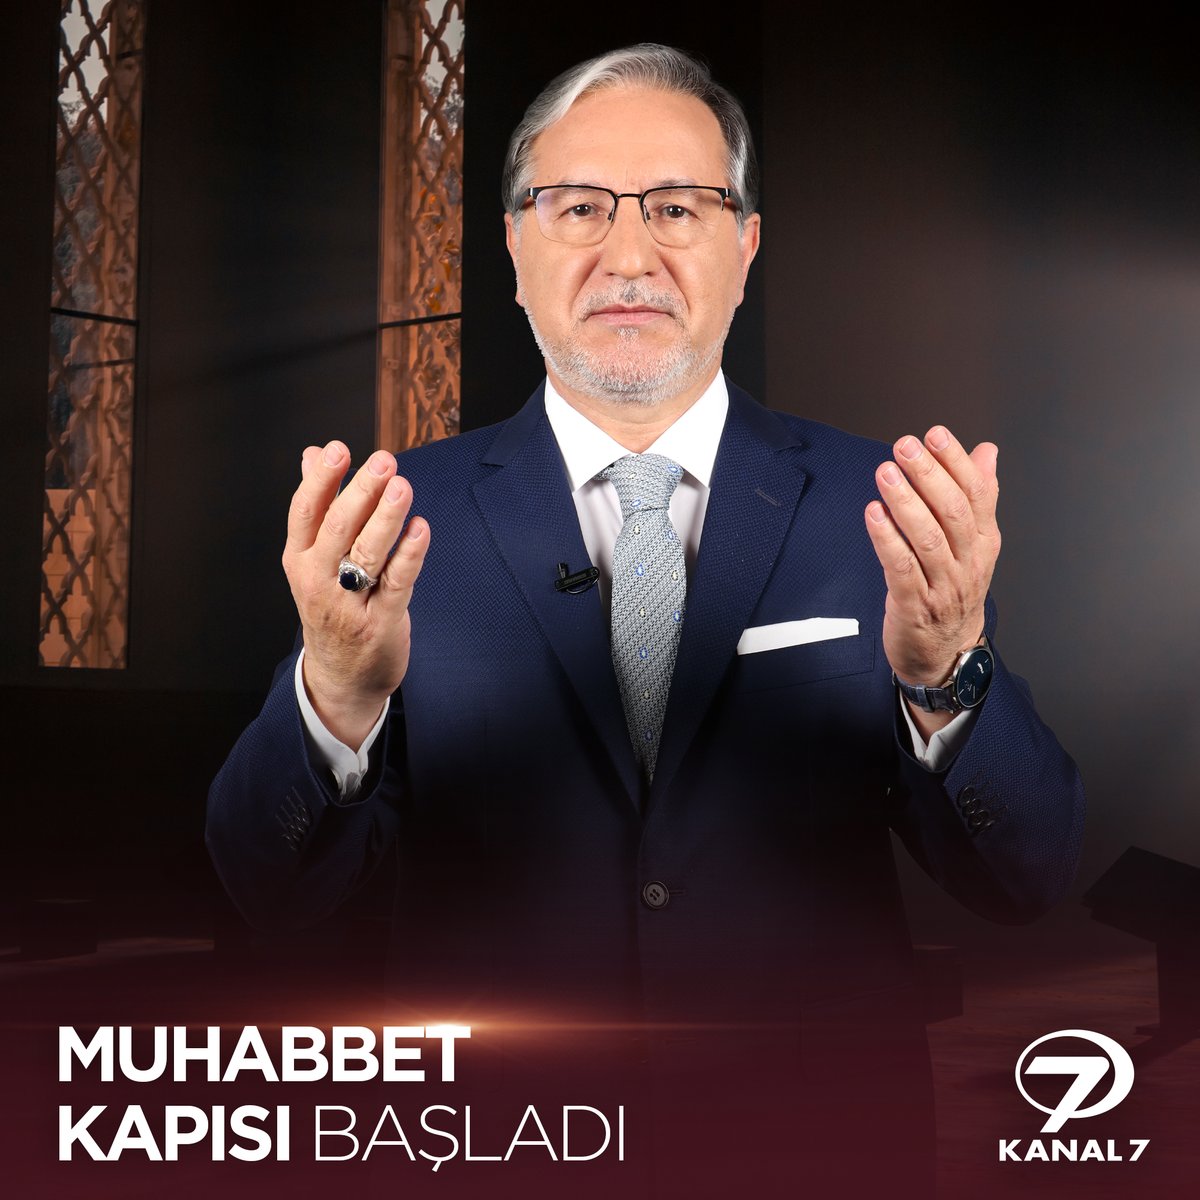 Mustafa Karataş ile Muhabbet Kapısı Kanal 7 ekranlarında sizlerle buluşmaya devam ediyor. 📢 #mustafakarataş #MuhabbetKapısı #kanal7